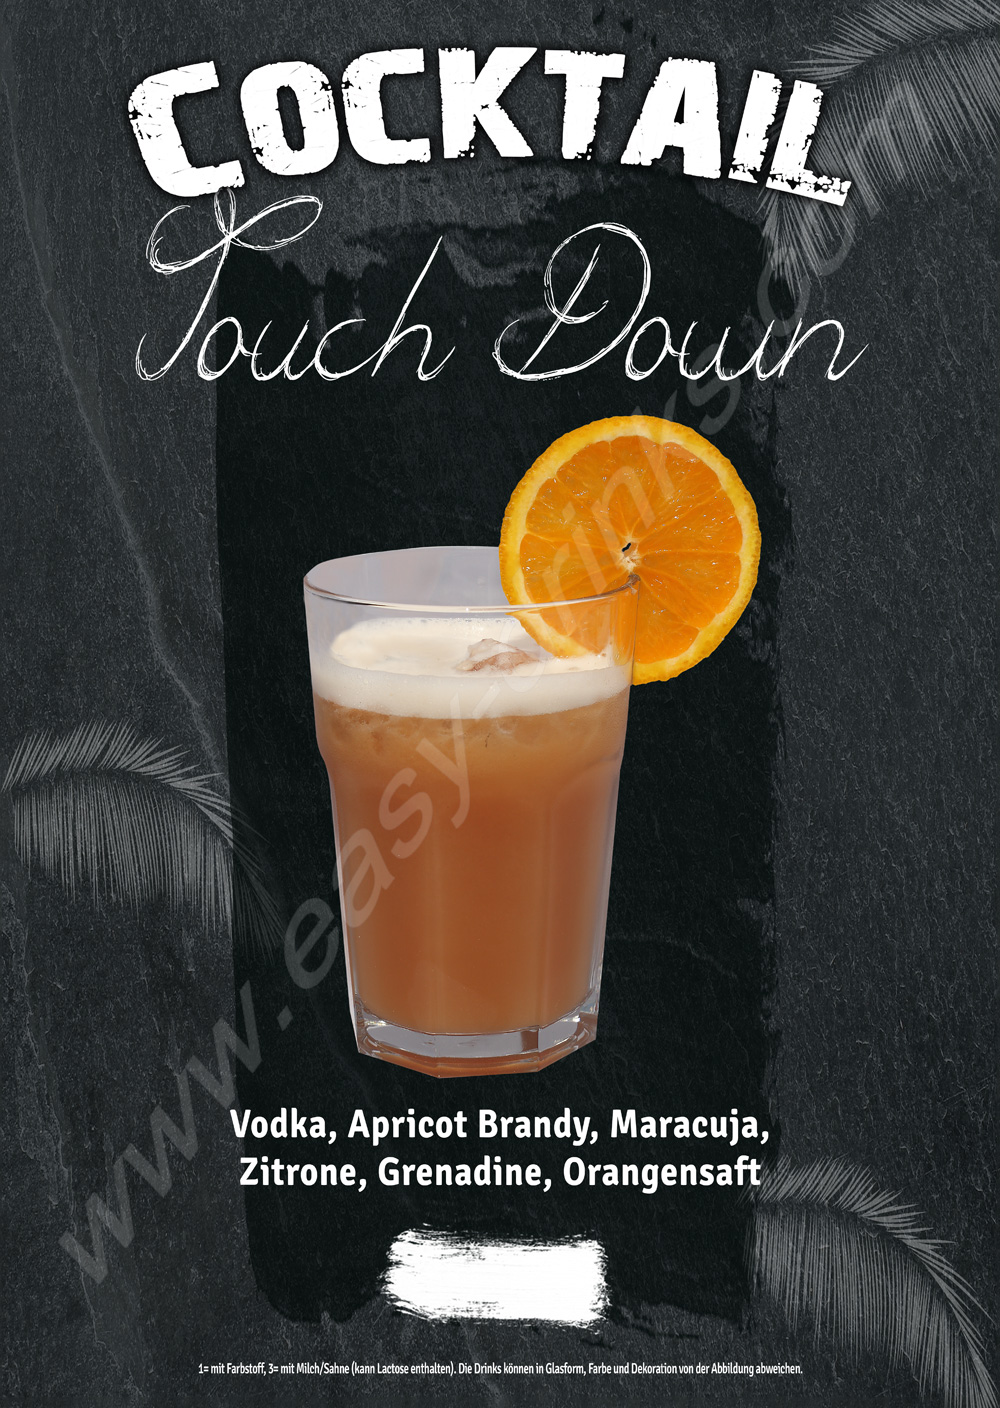 Touch Down / Fertigcocktail / 28% Vol. 0,7 ltr. / easy drinks